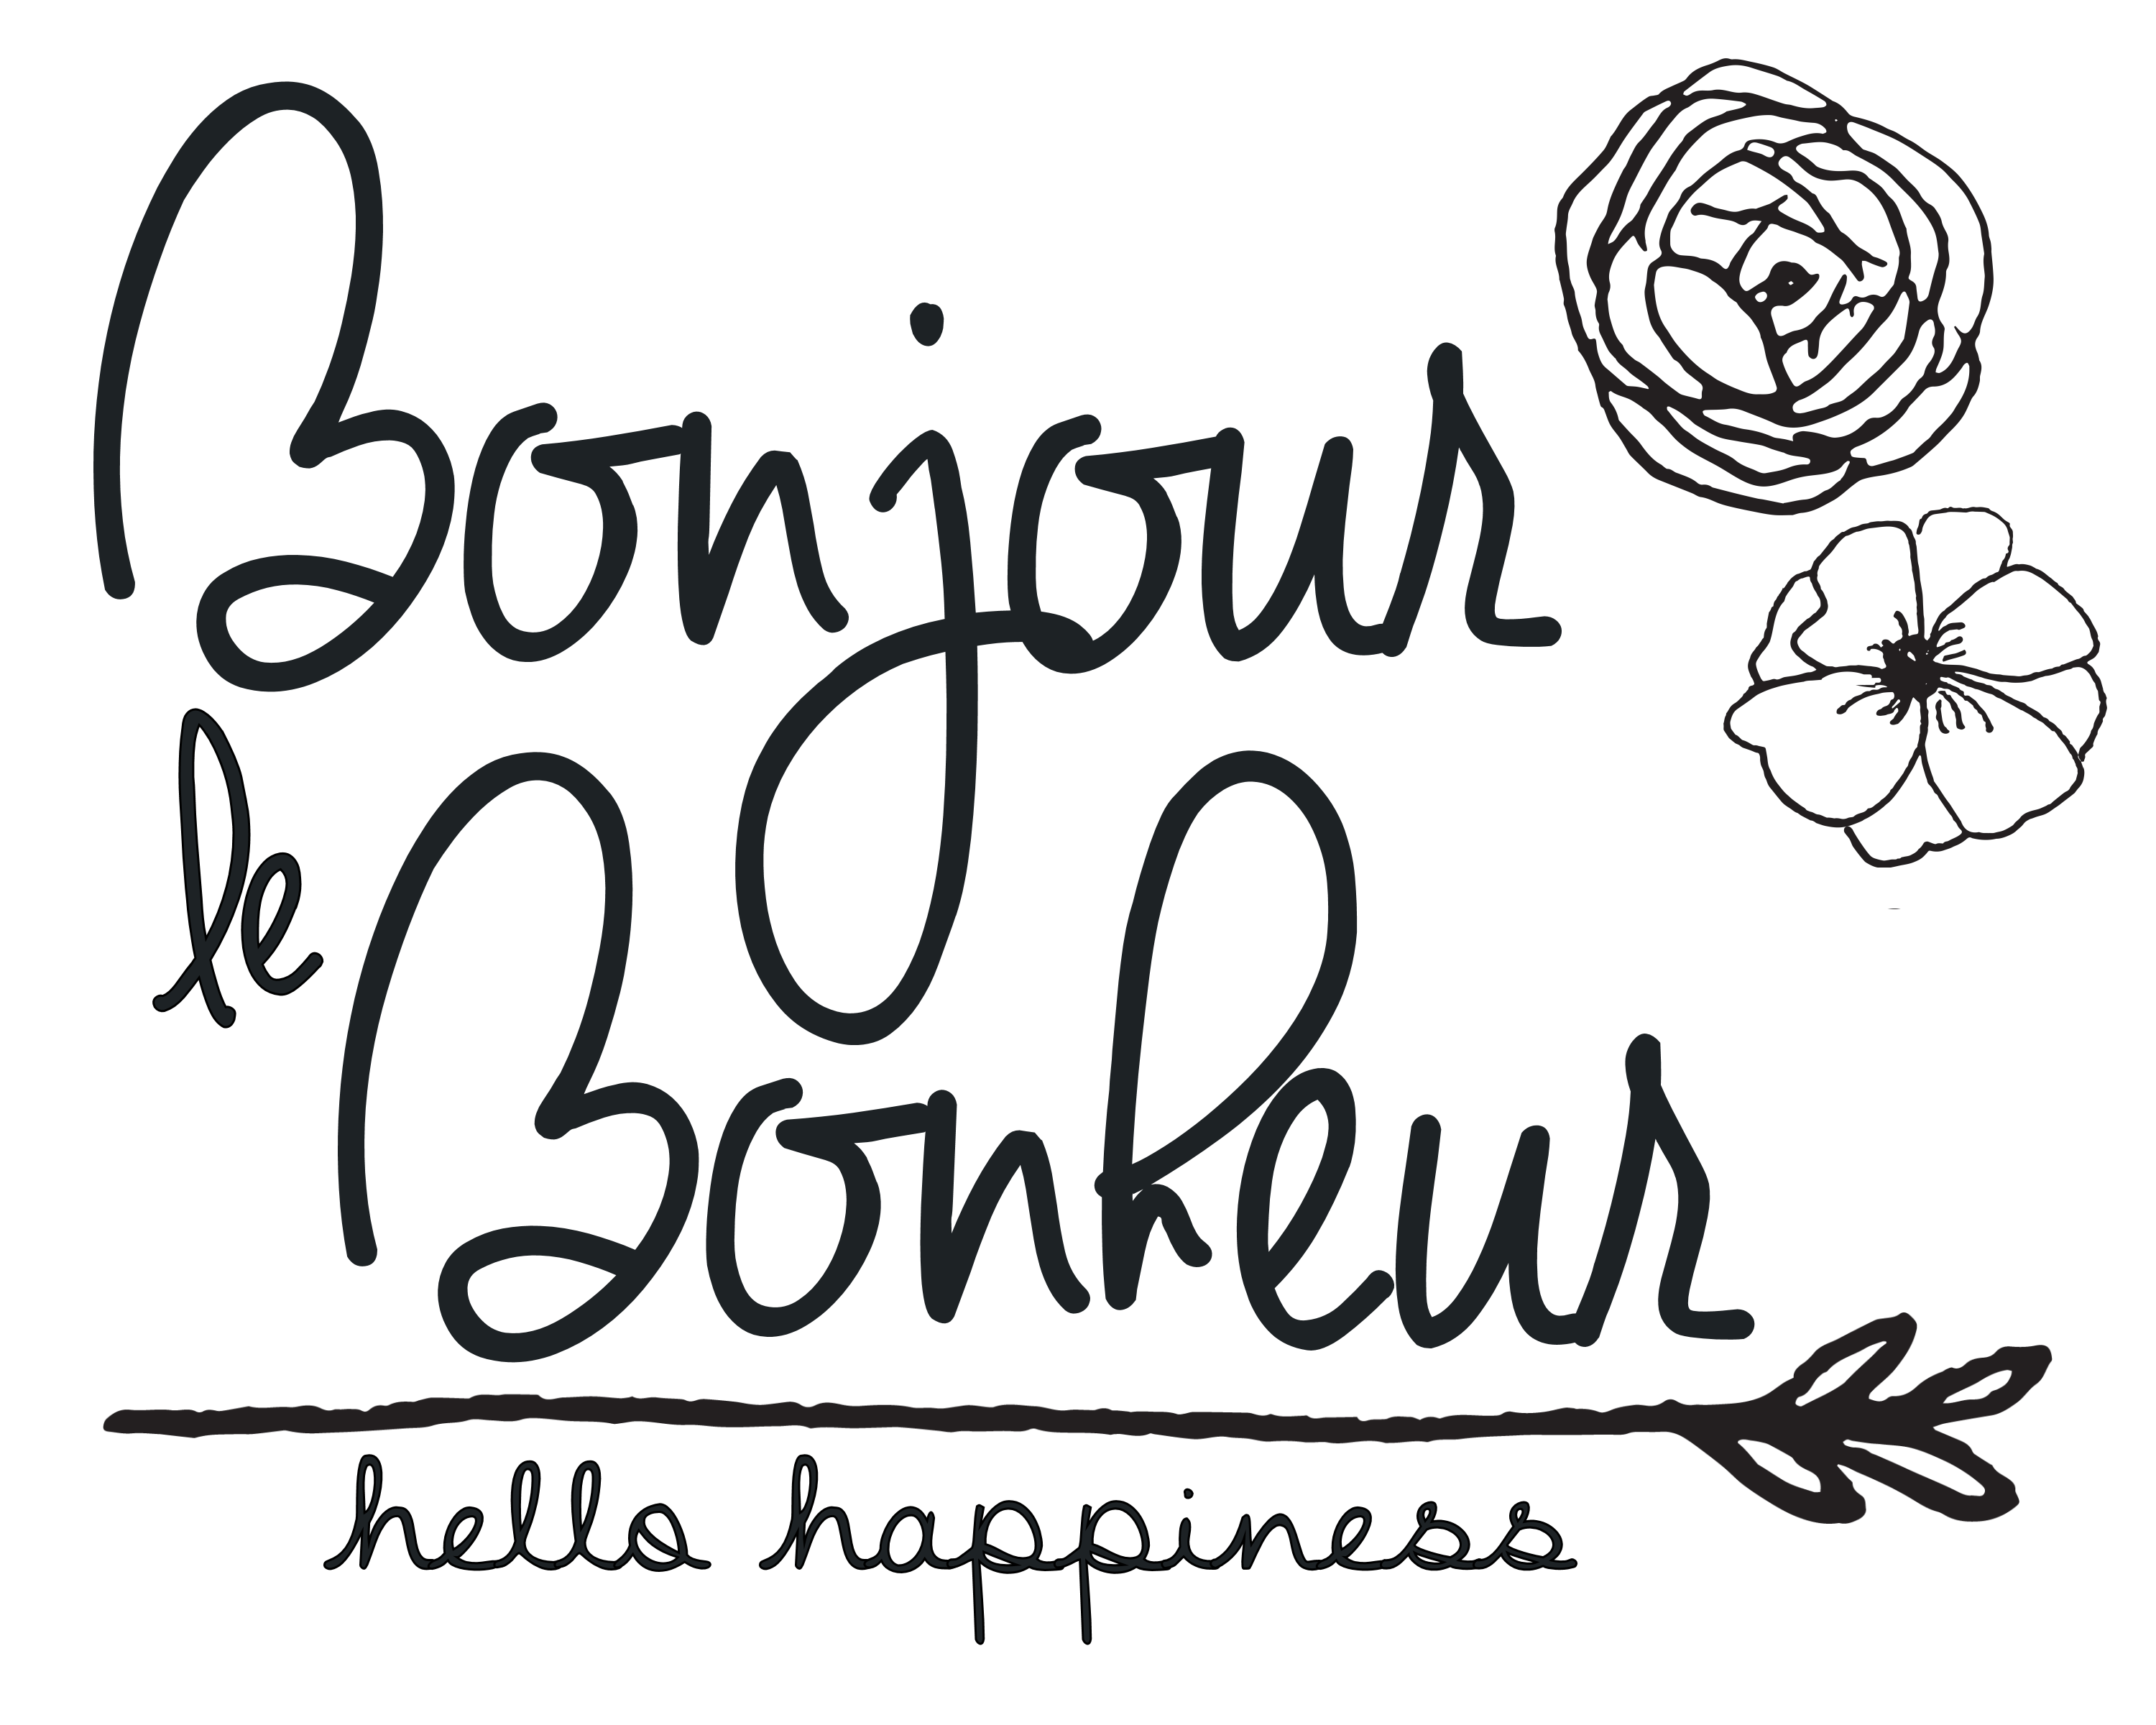 bonjourbonheur-clr, alongtheleftbank.com